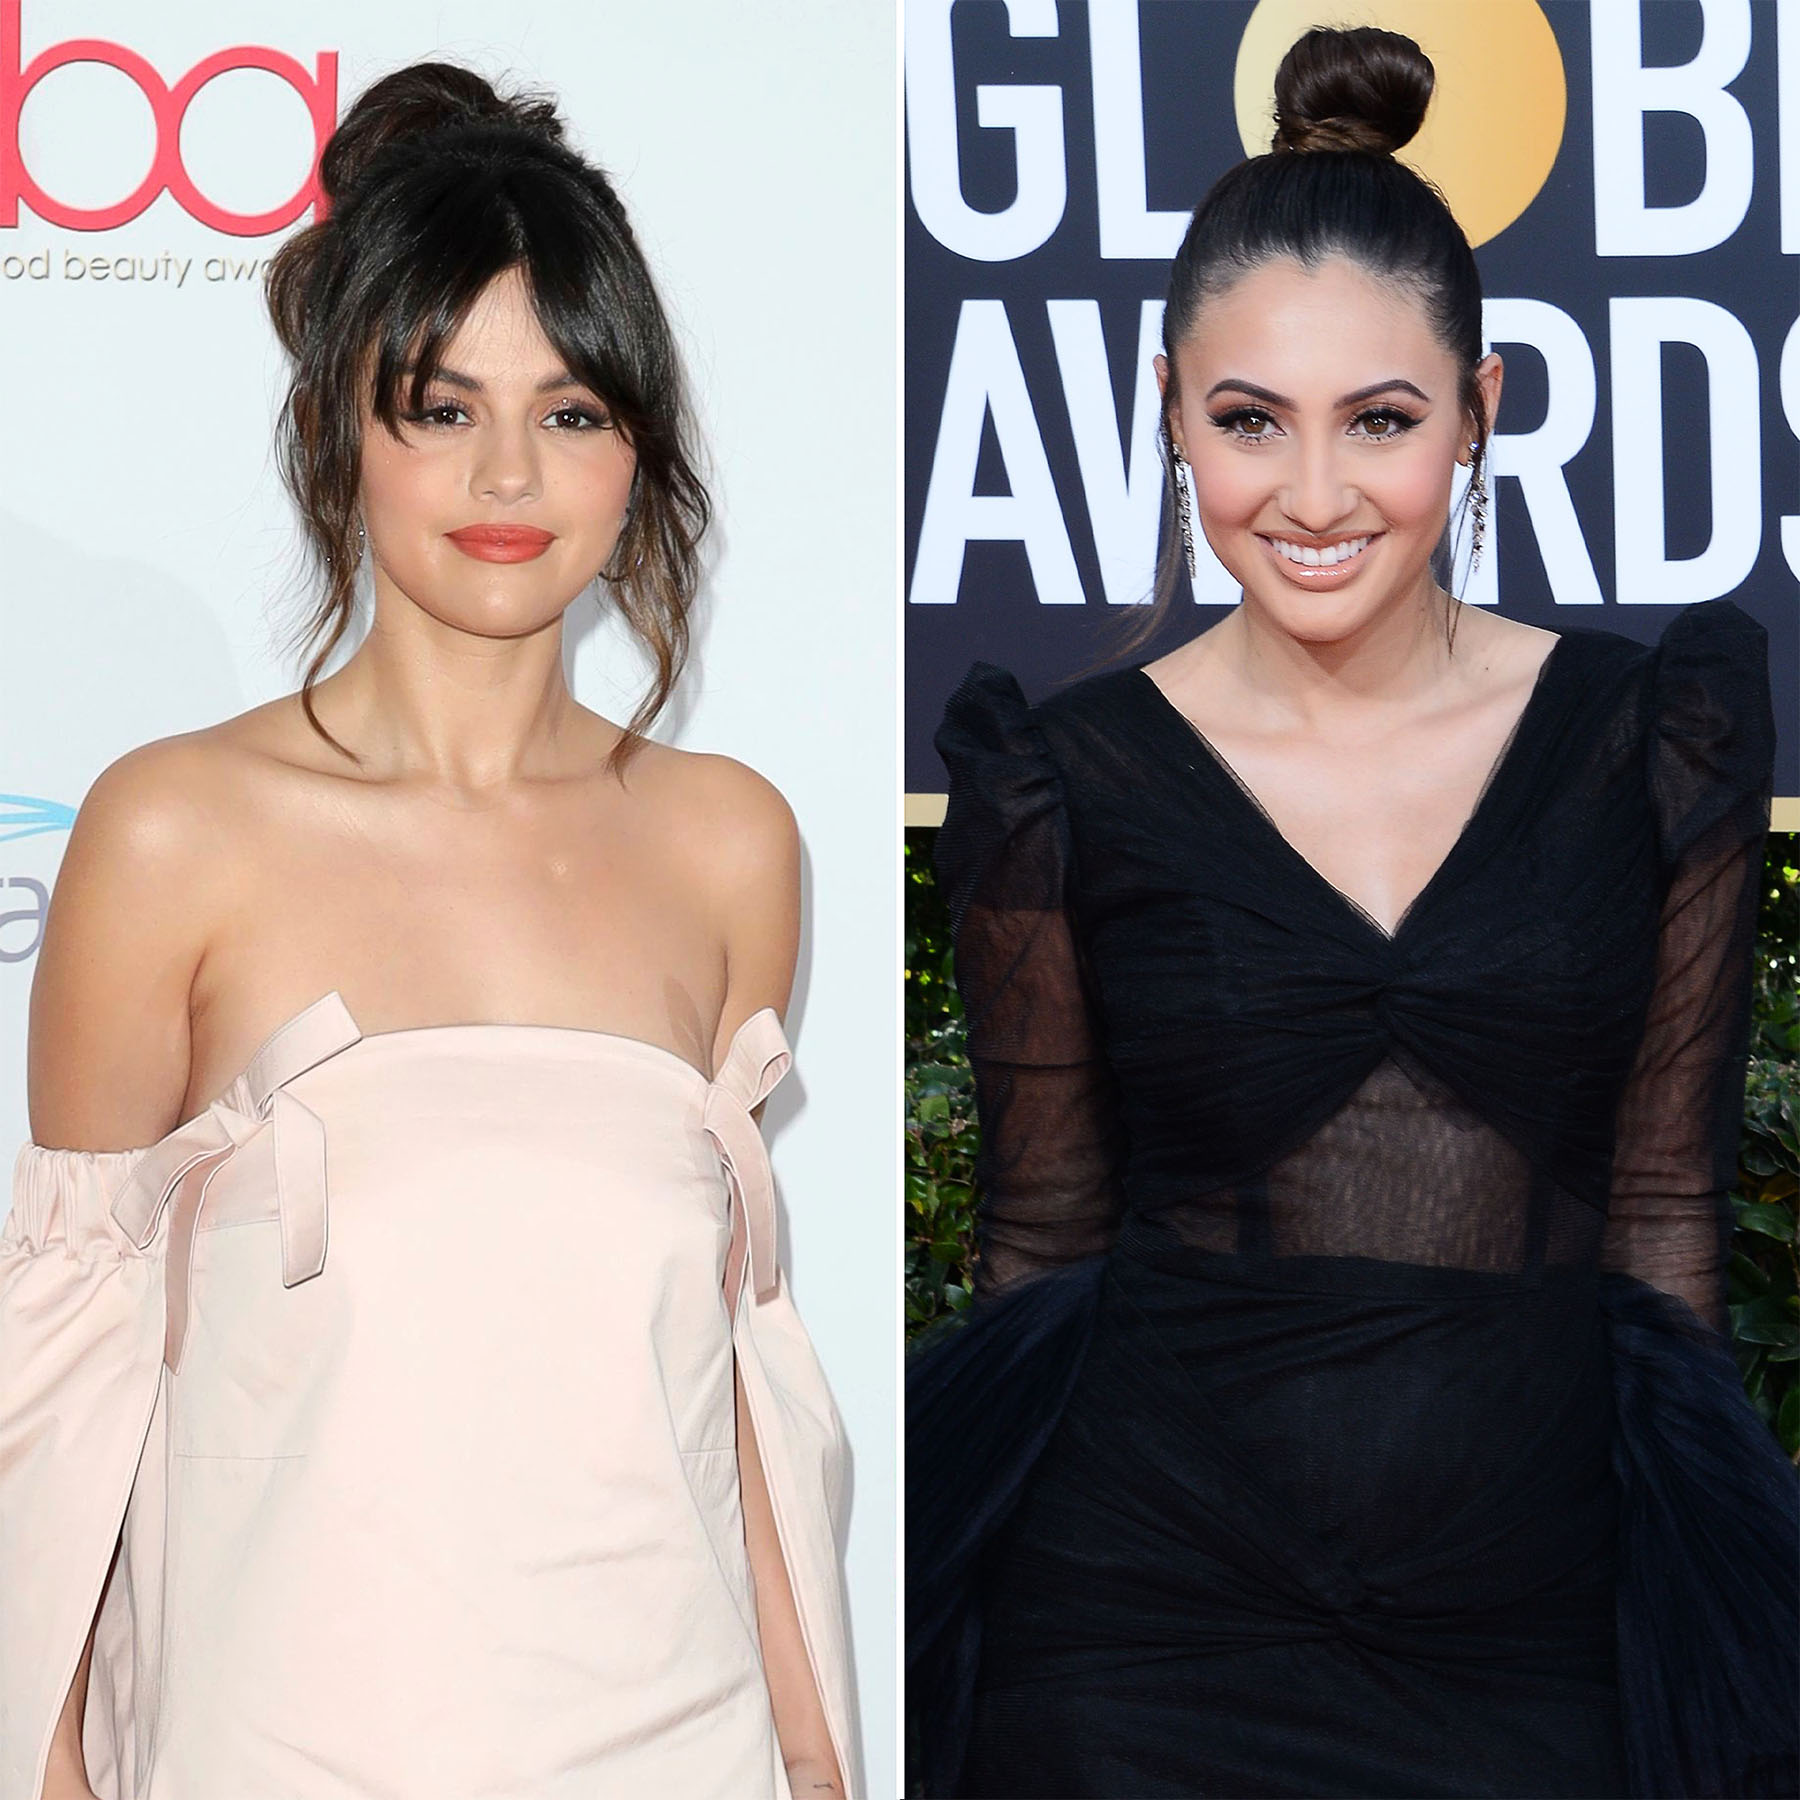 Francia Raisa Addresses Bullying amid Selena Gomez Social Media Drama